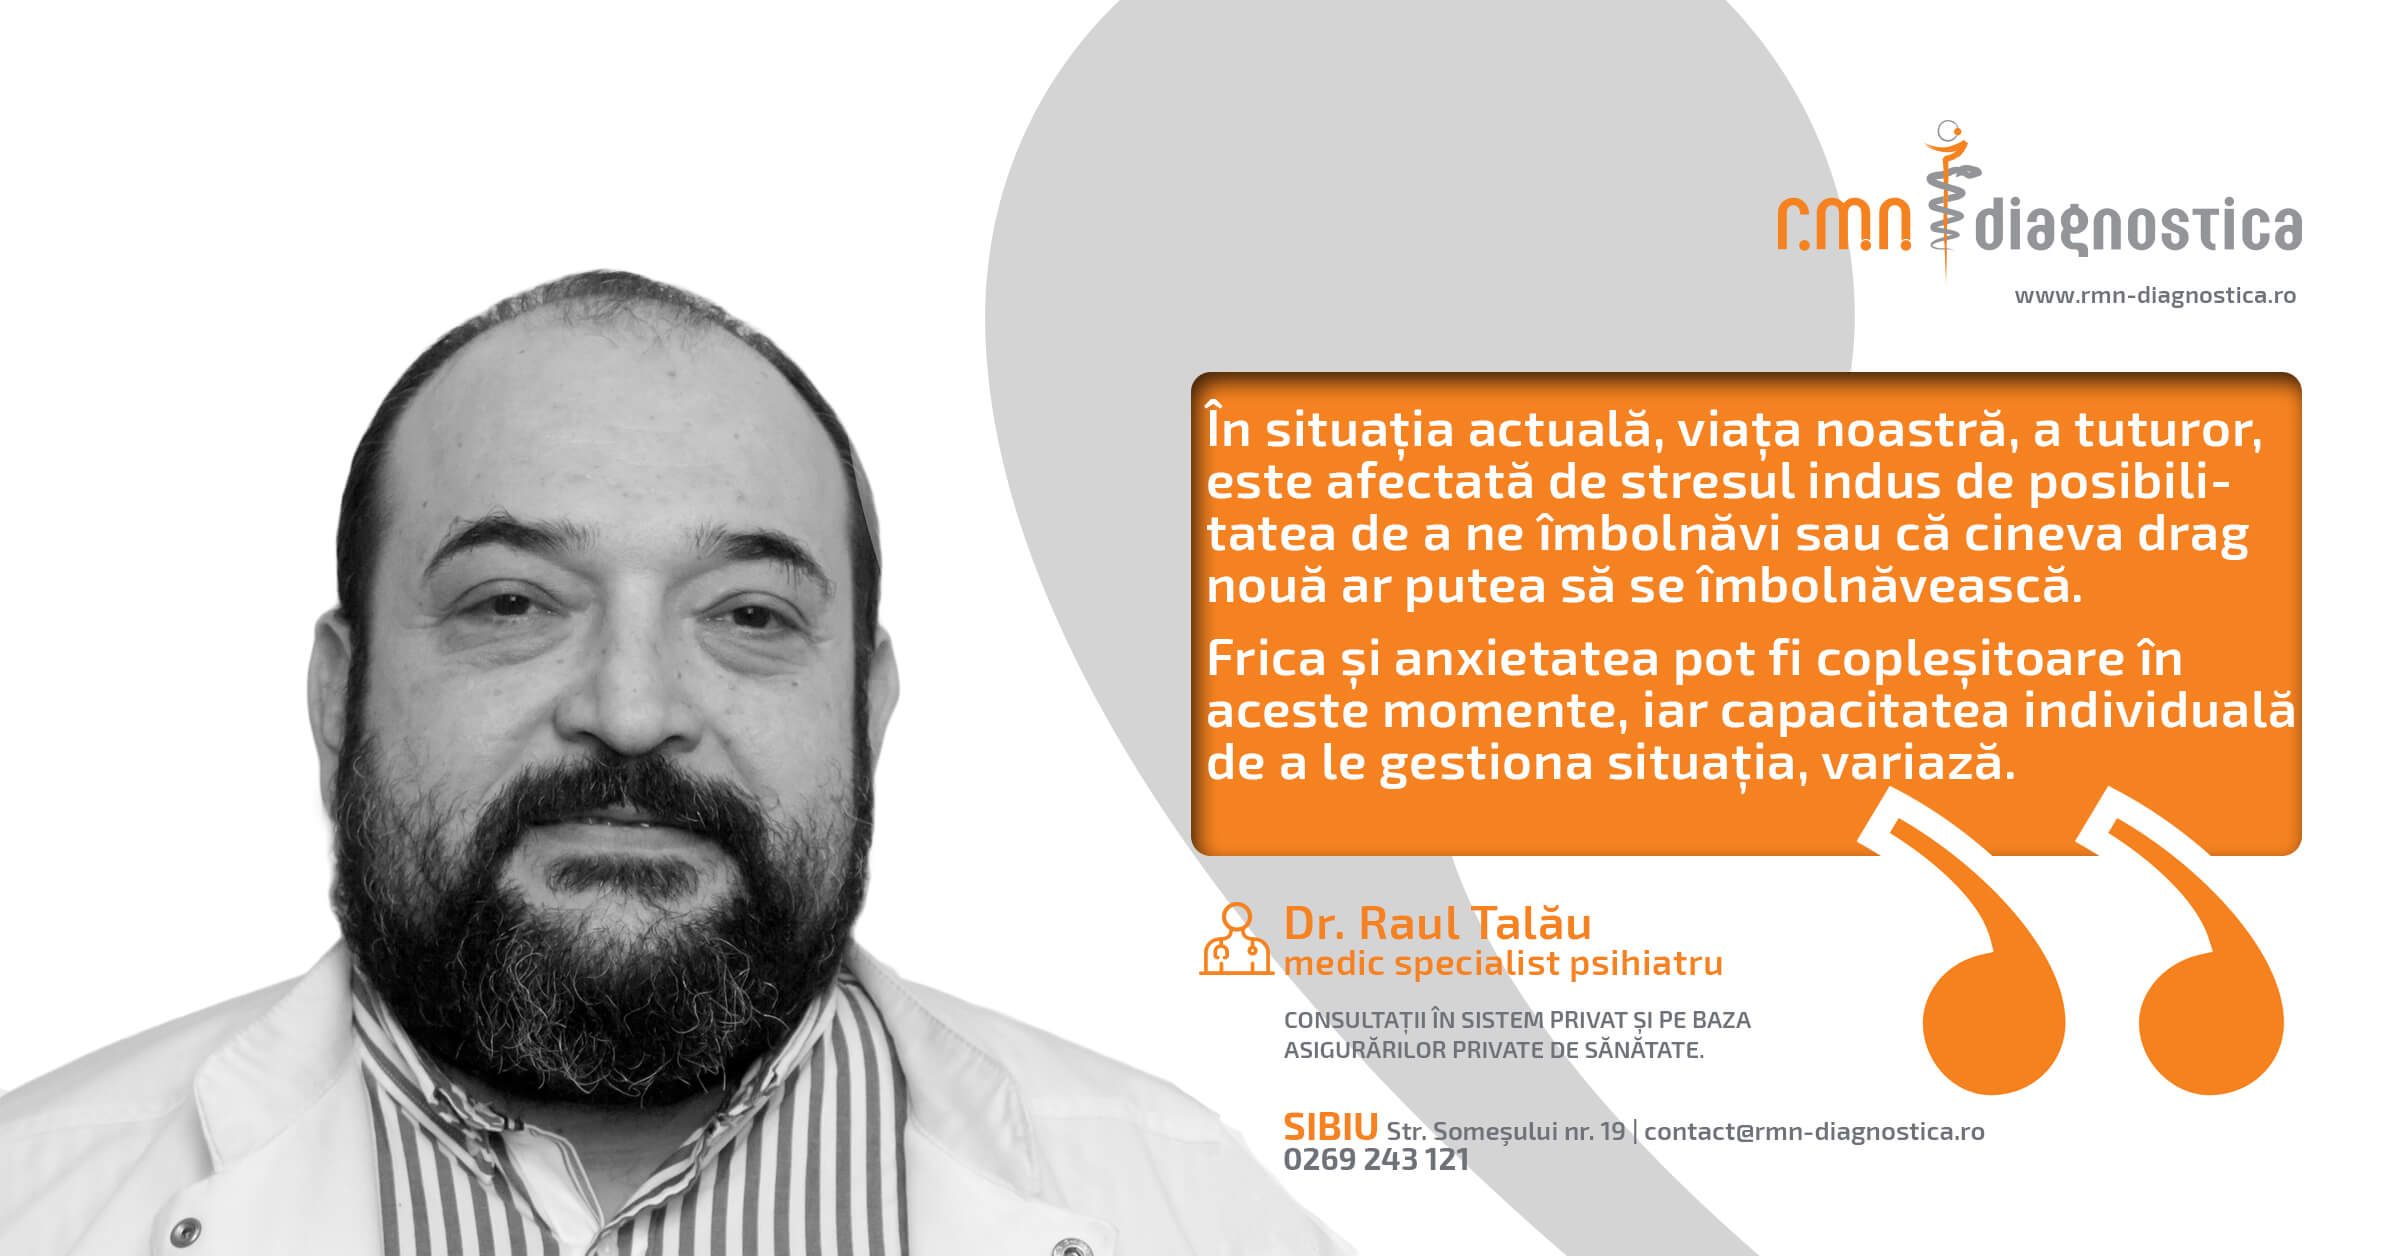 Doctor Raul Talău, medic specialist psihiatru în cadrul centrelor RMN Diagnostica Sibiu și Făgăraș